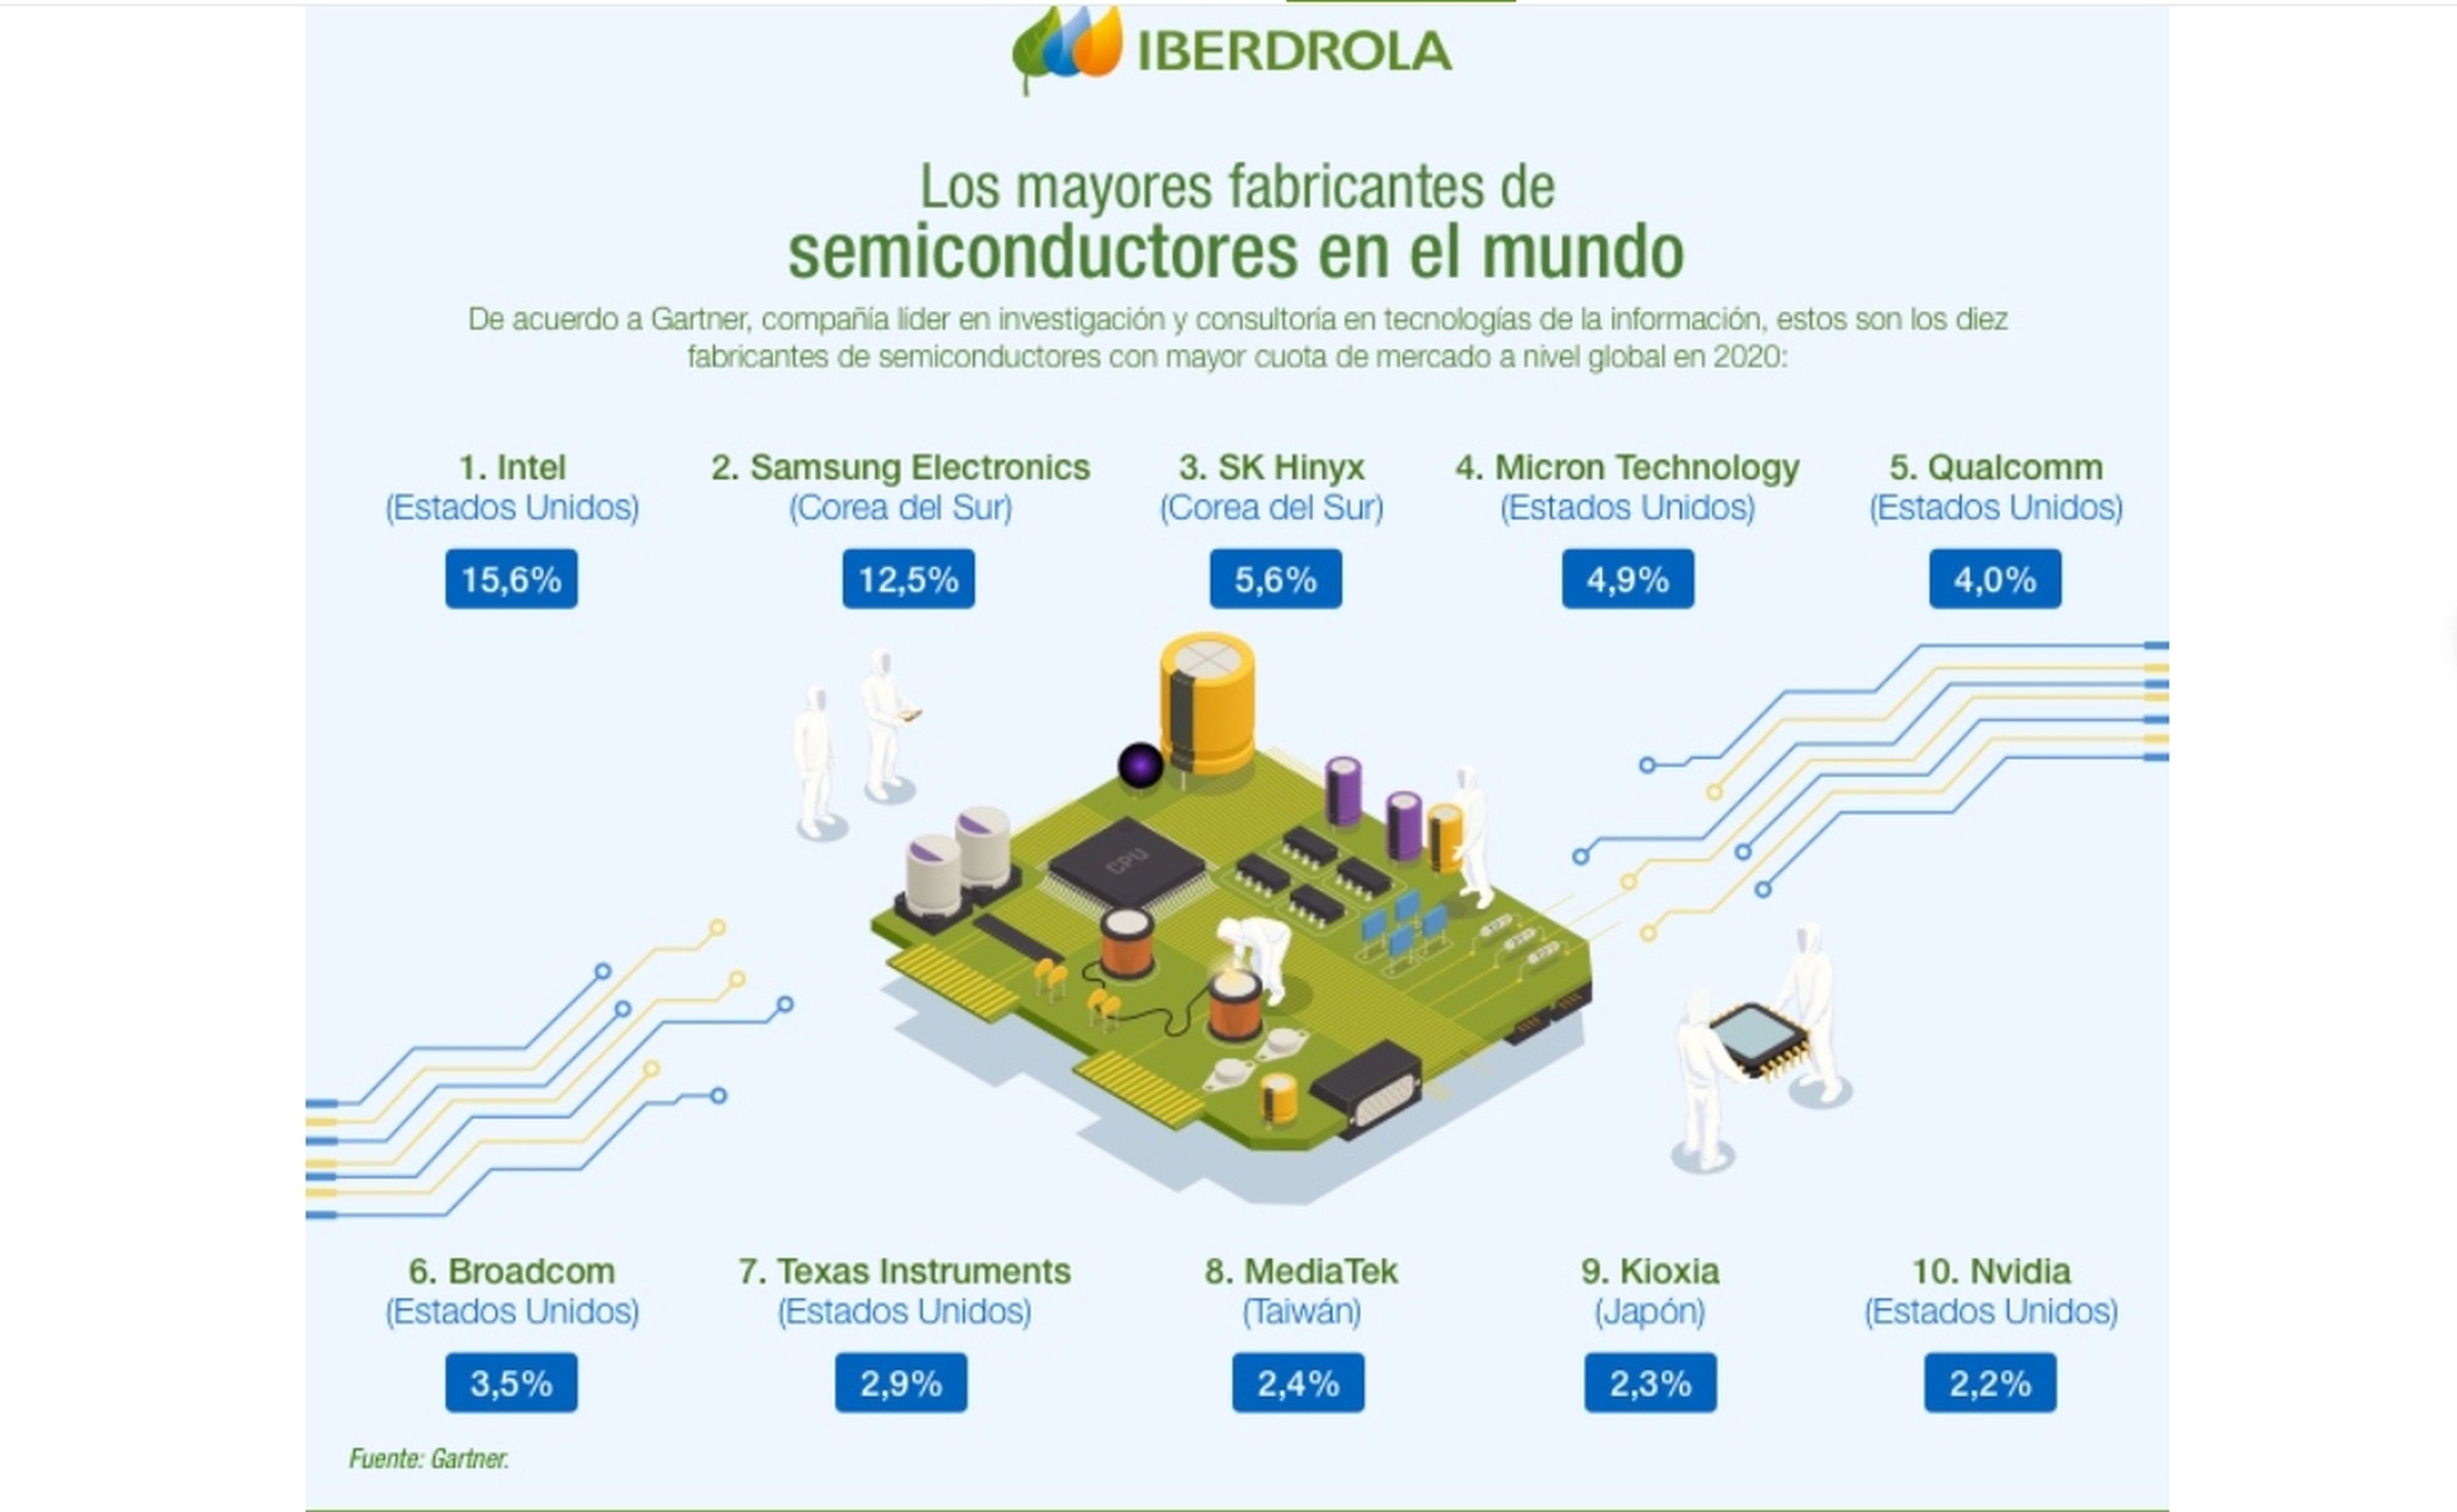 Los mayores fabricantes de semiconductores en el mundo. Fuente: Iberdrola.